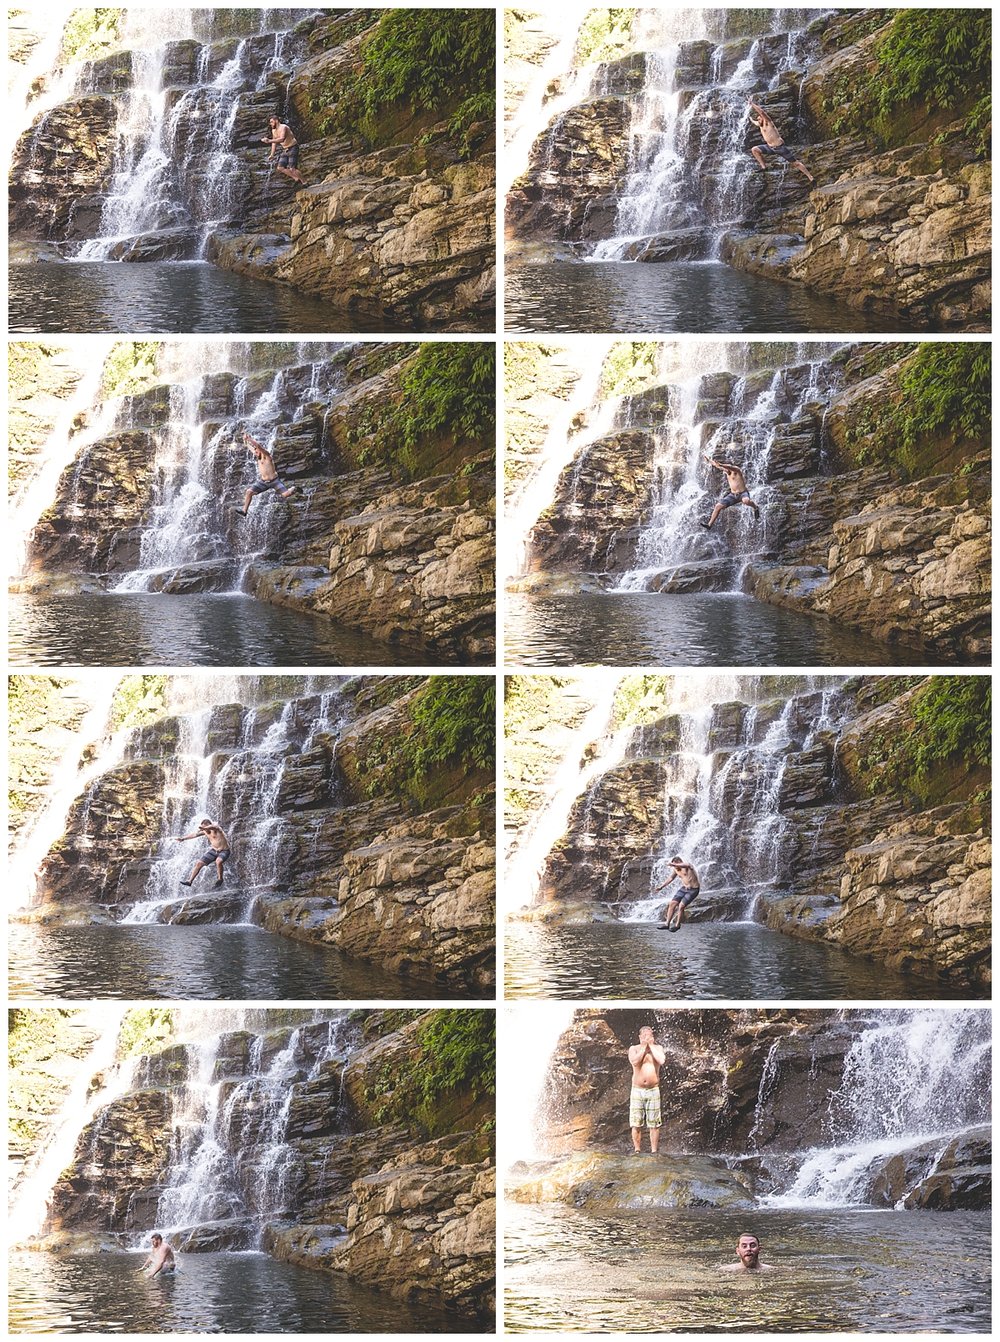 Nauyaca Waterfall Dominical_0005.jpg